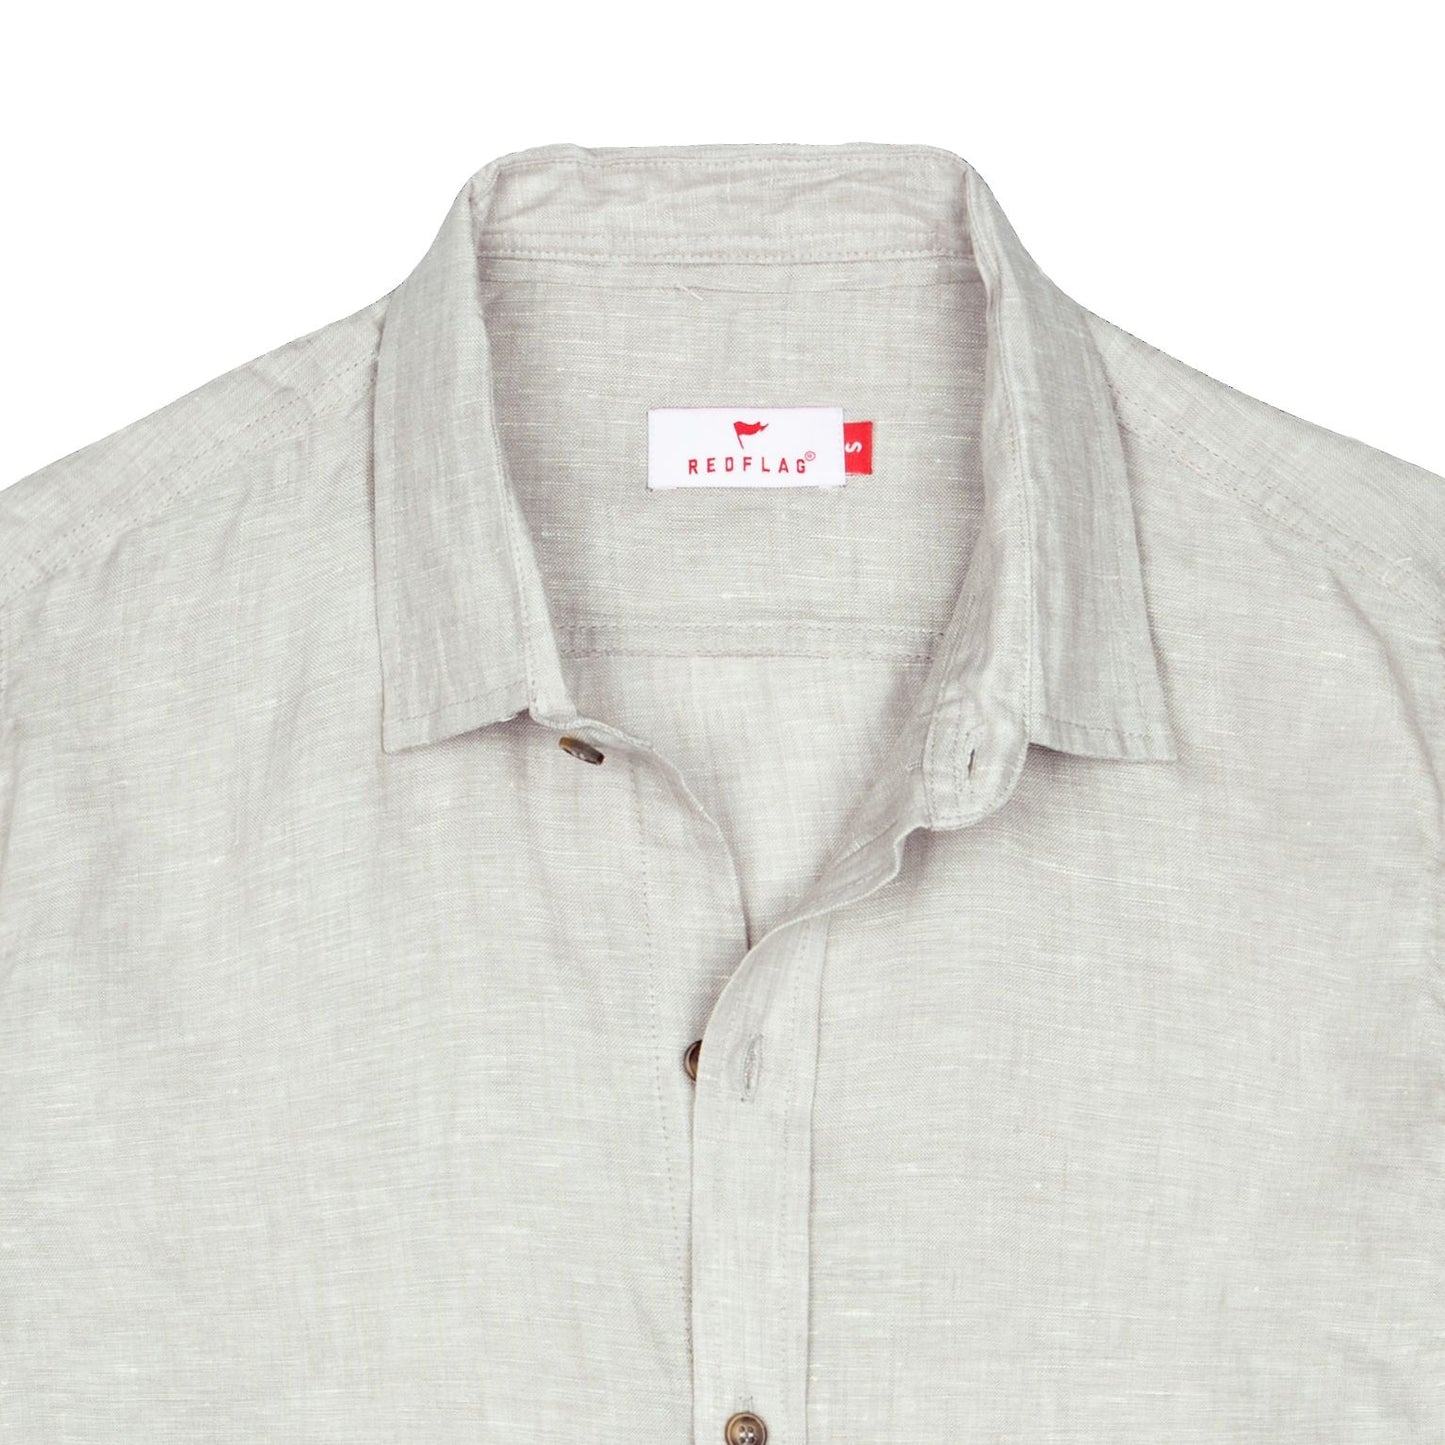 Gray Linen Shirt